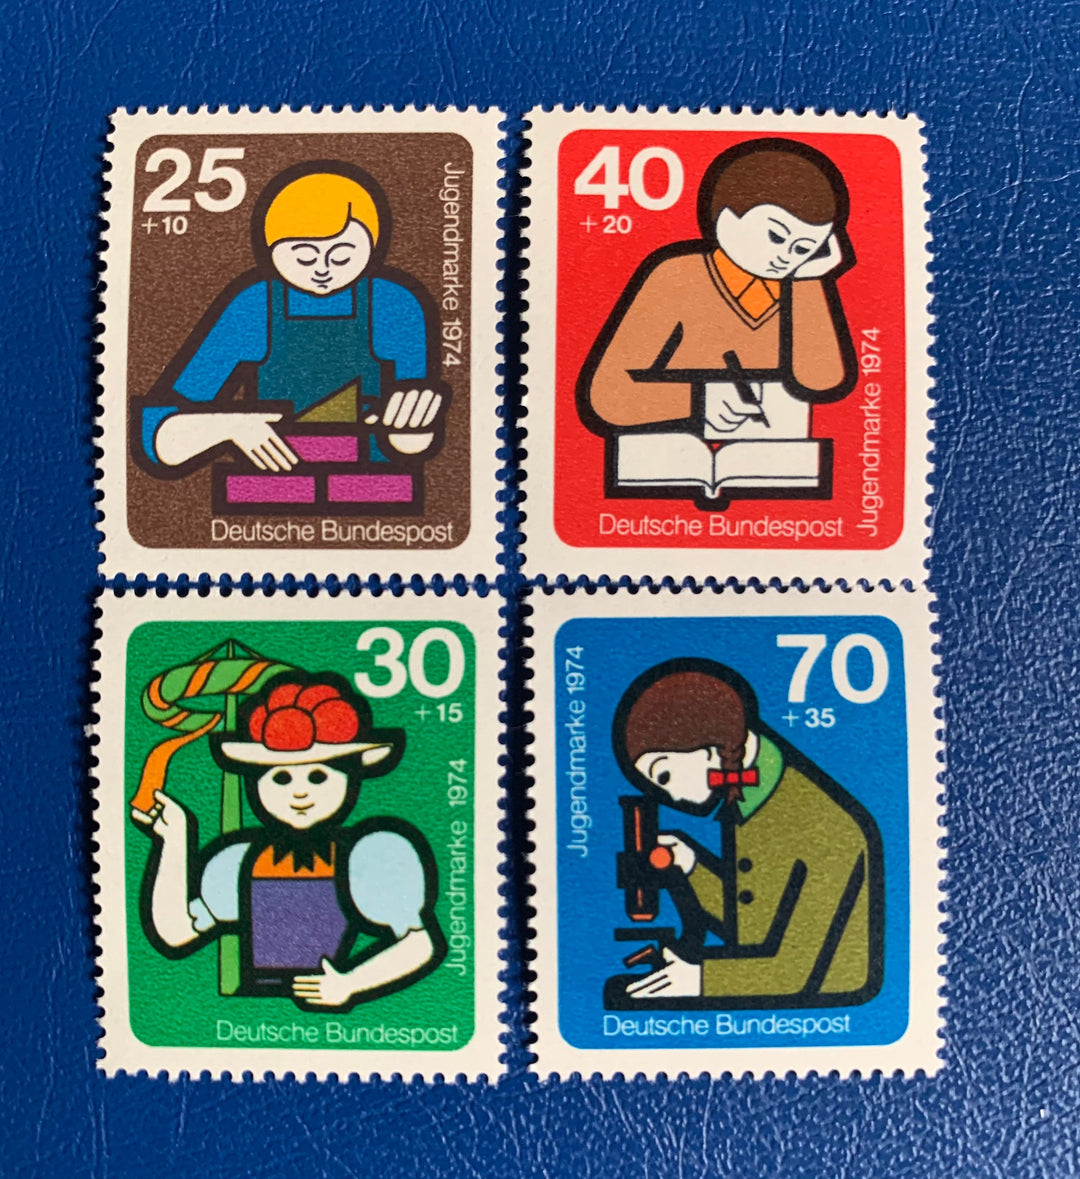 West Germany -Original Vintage Postage Stamps- 1974 - Workers